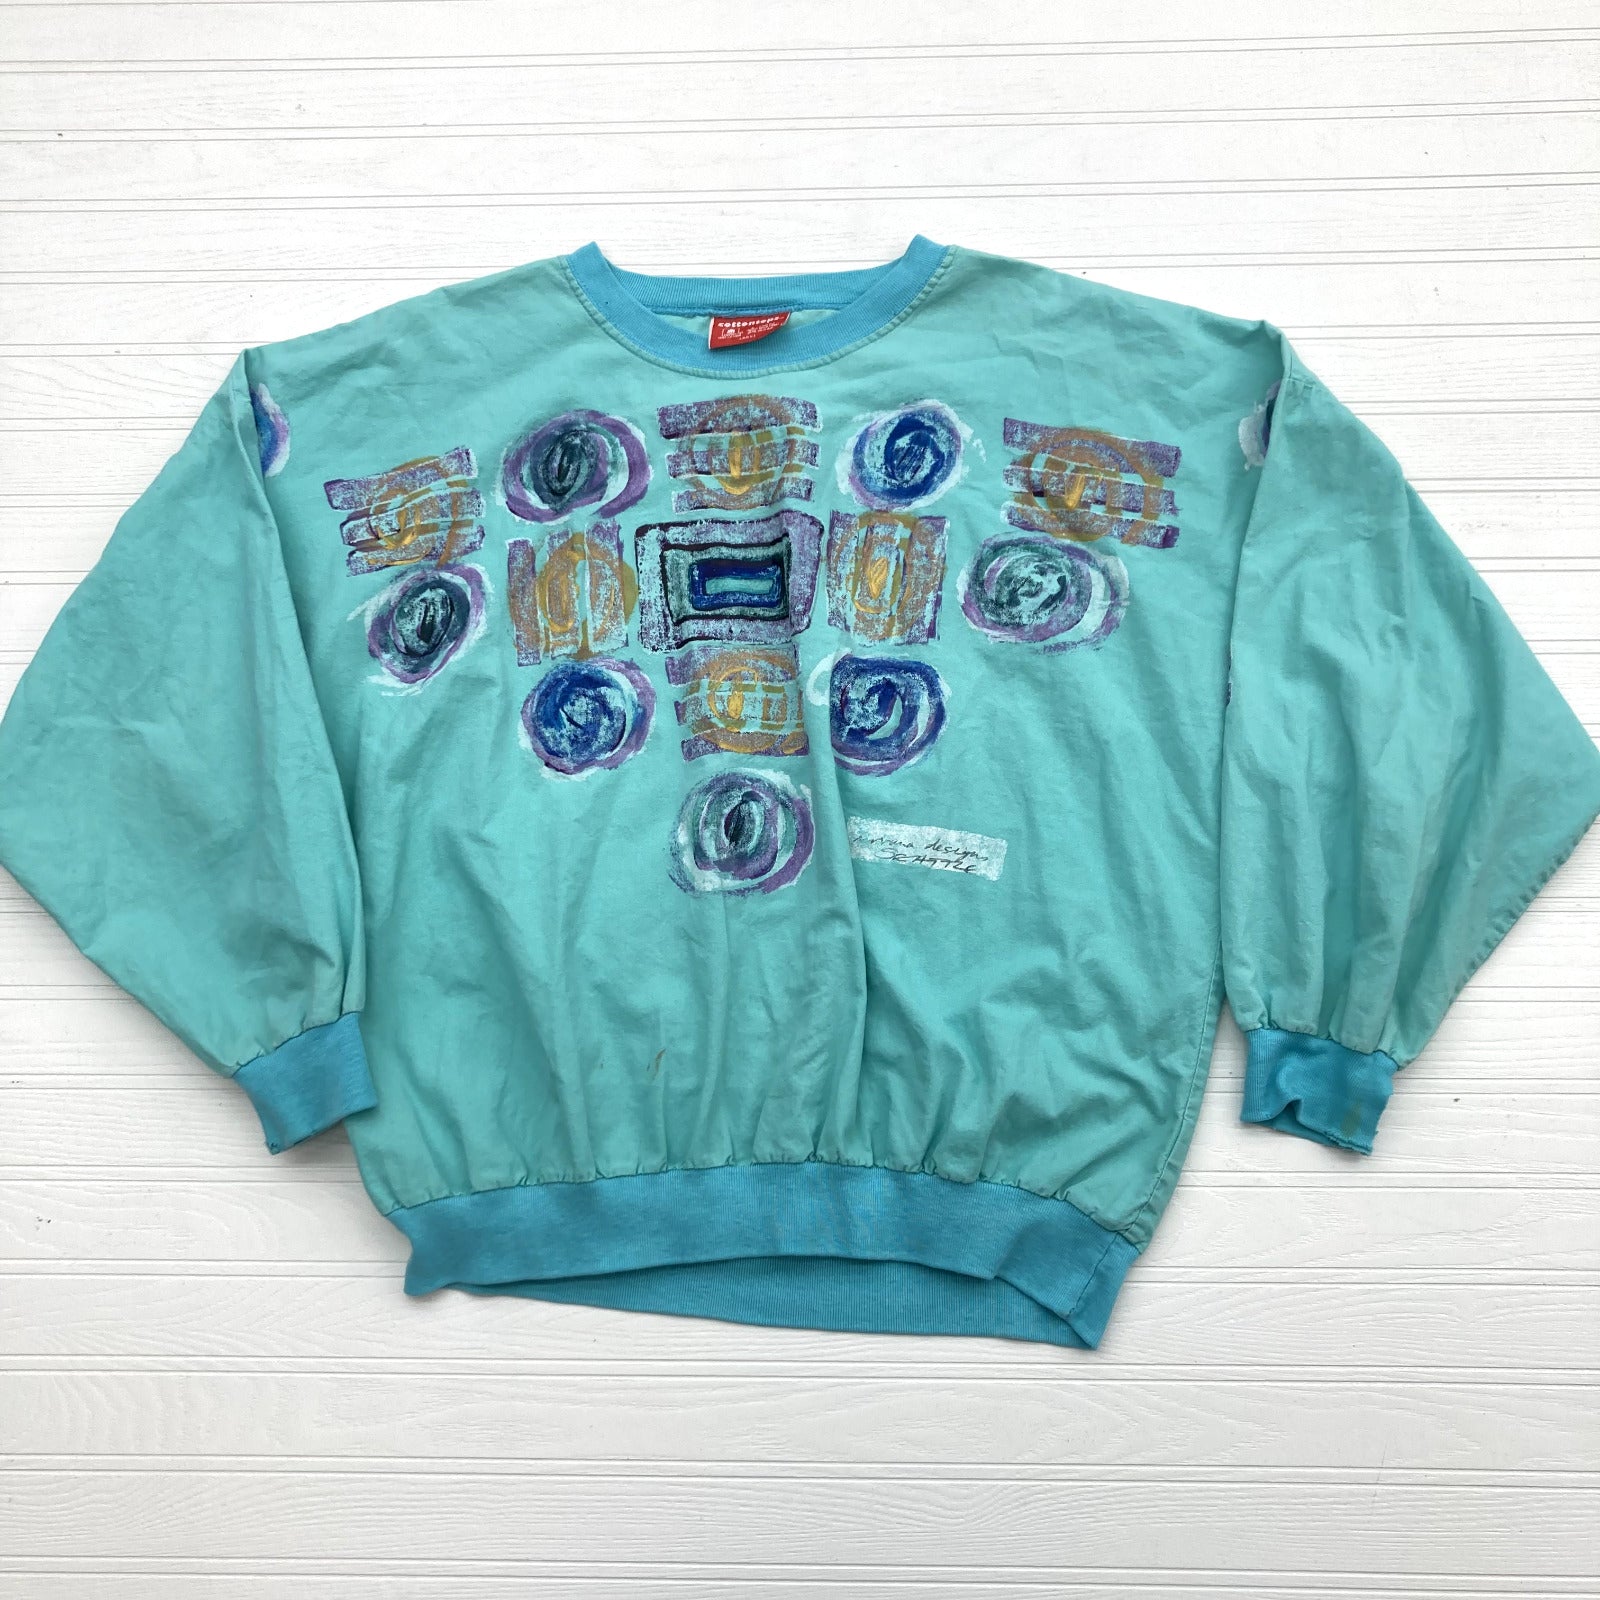 Vintage Cottontops Blue Teal Geometric 90s Paint Thin Sweatshirt Adult Size L